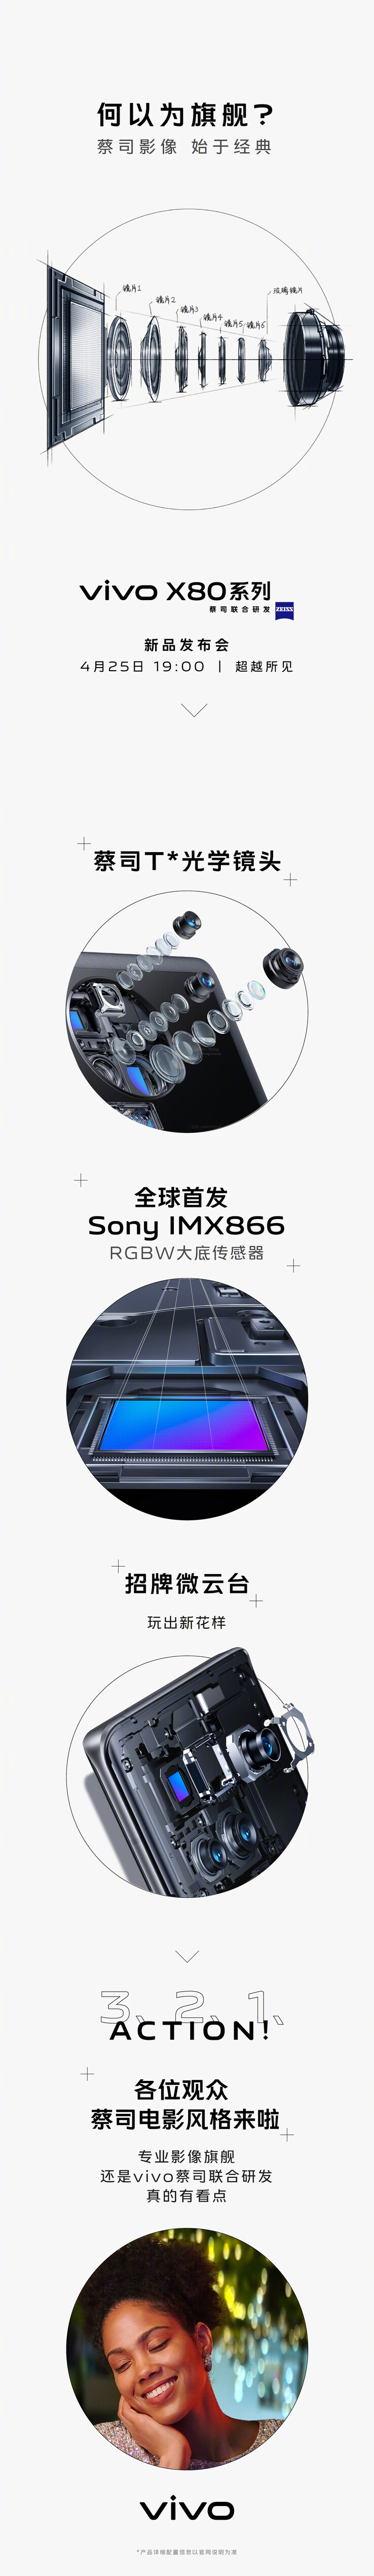 Vivo se burla de la nueva cámara principal de Sony del X80s. (Fuente: Vivo vía Weibo)